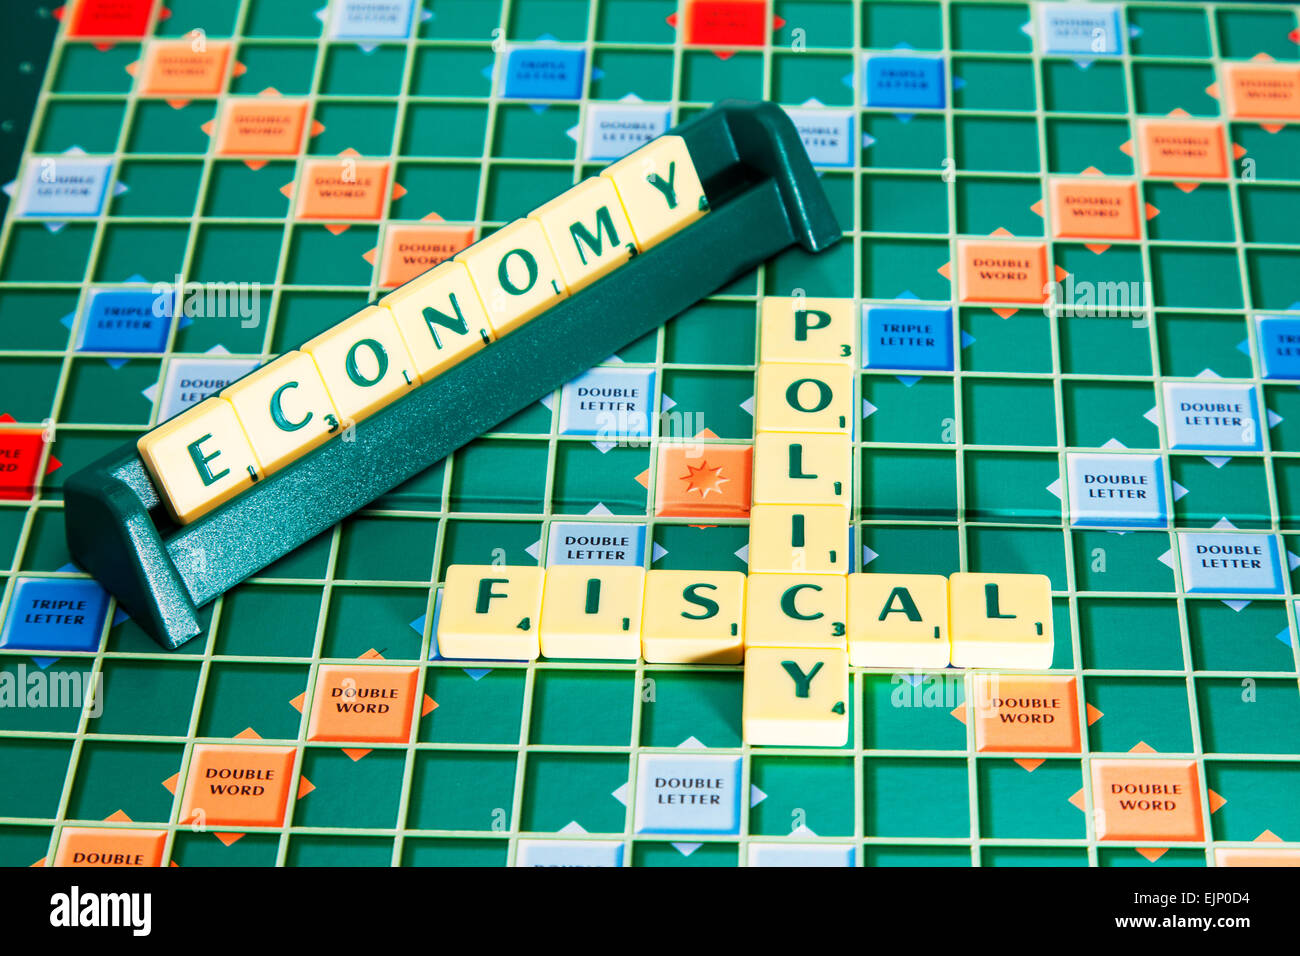 La politica fiscale economia elezioni governo fiscale imposte IVA sollevando le parole usando piastrelle scrabble per illustrare l'ortografia compitare Foto Stock